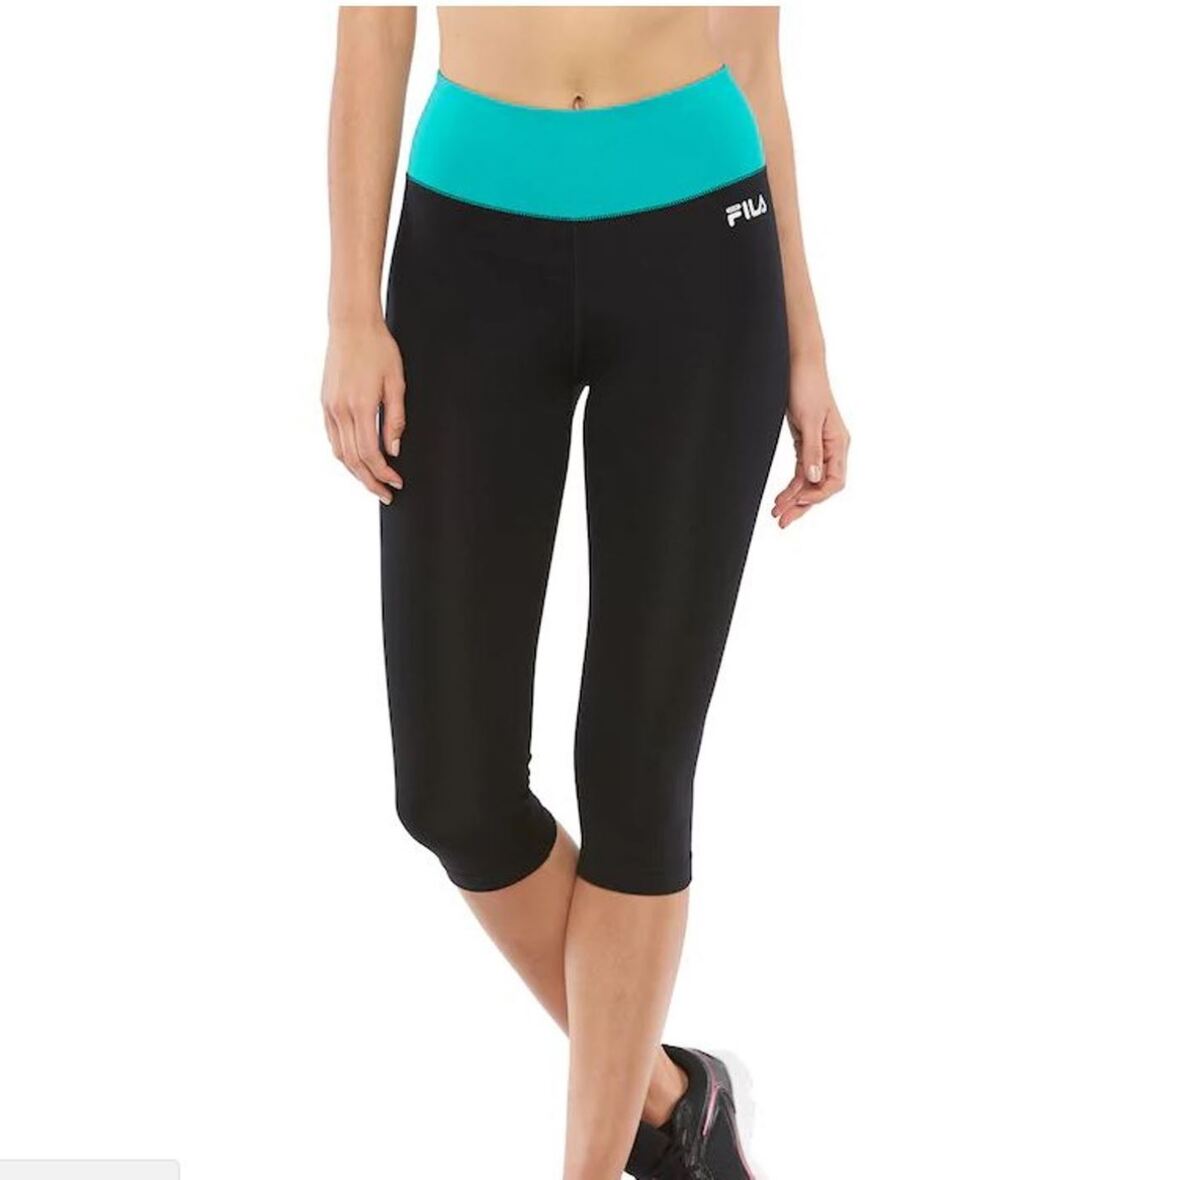 FILA SPORT Women's High Waist Capri Skimmer Leggings Exercise Yoga S-XL New  $40